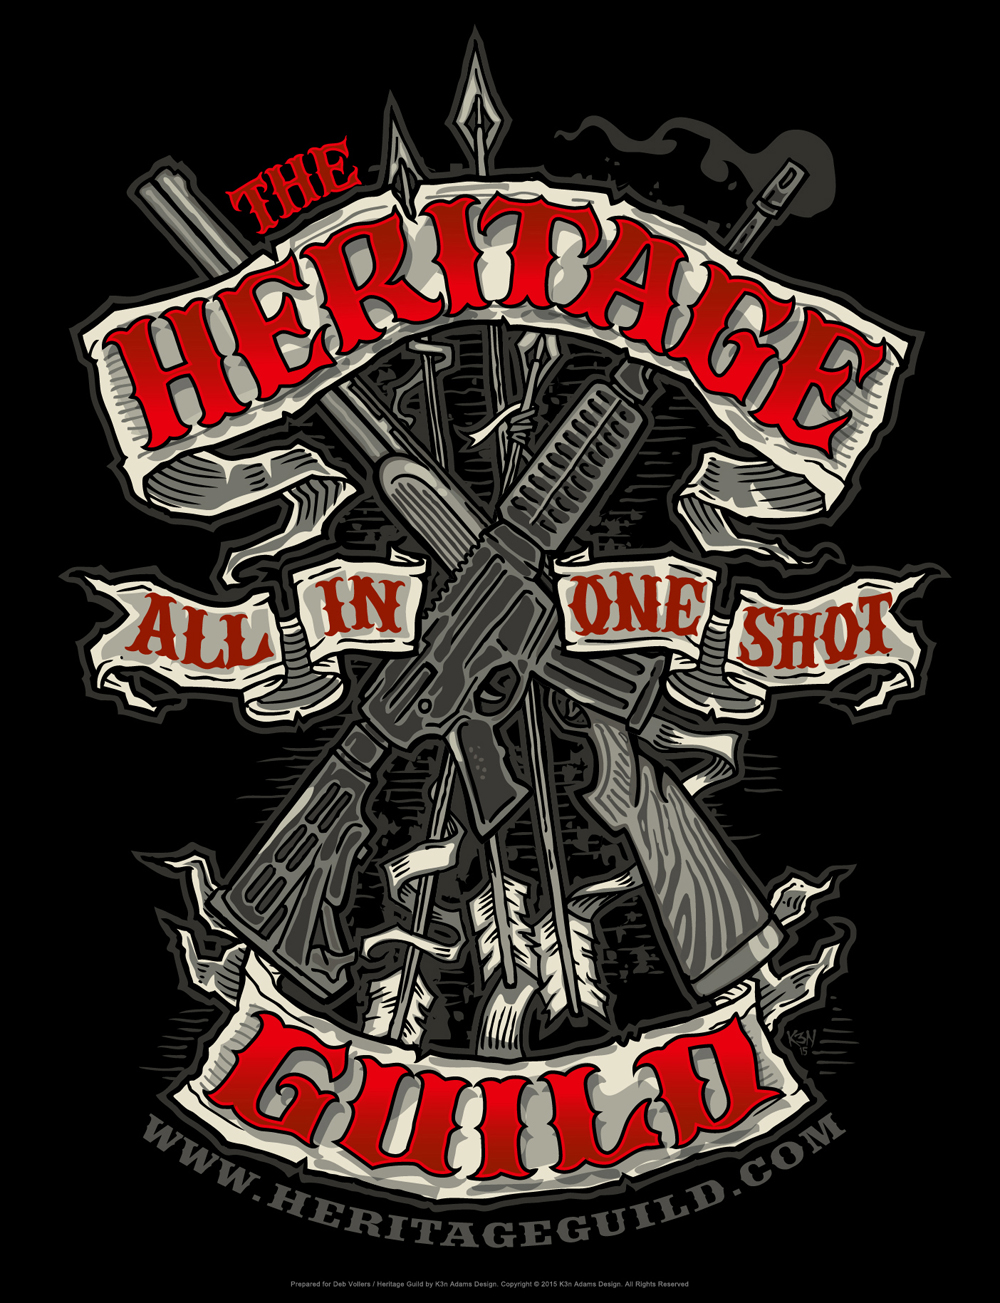 Heritage Guild – Crest Shirt